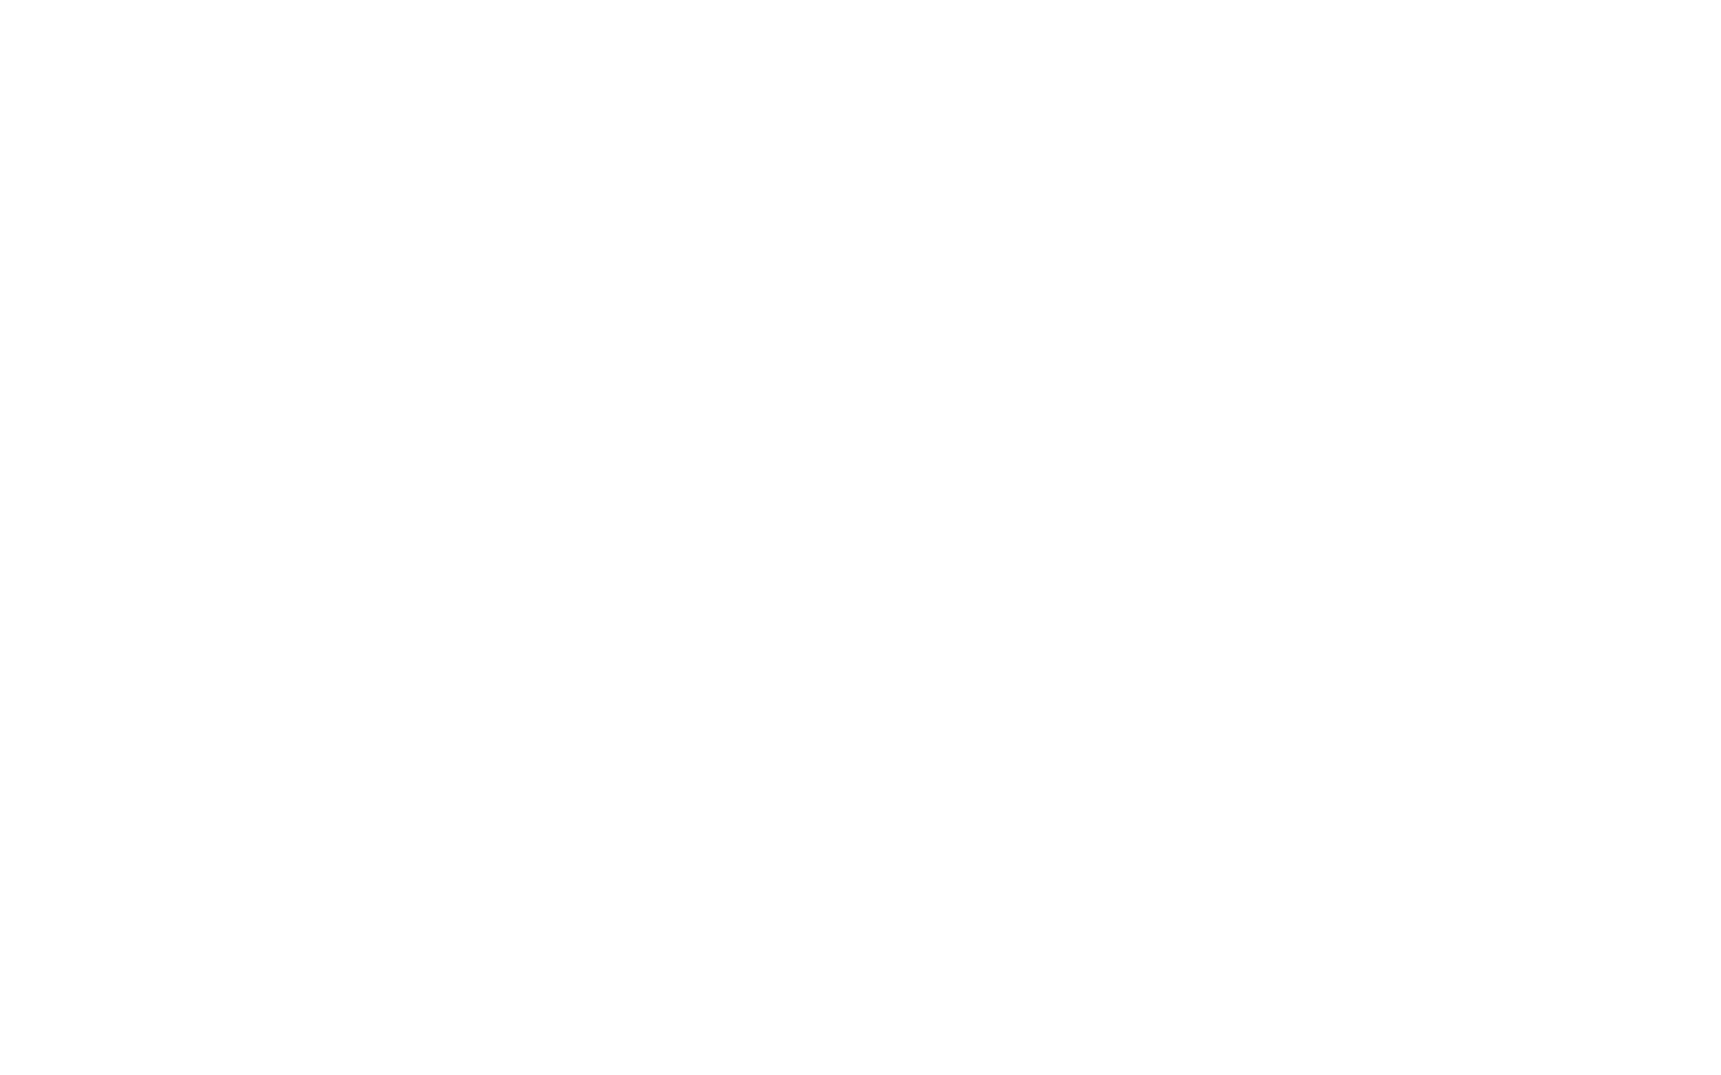 Go Generali